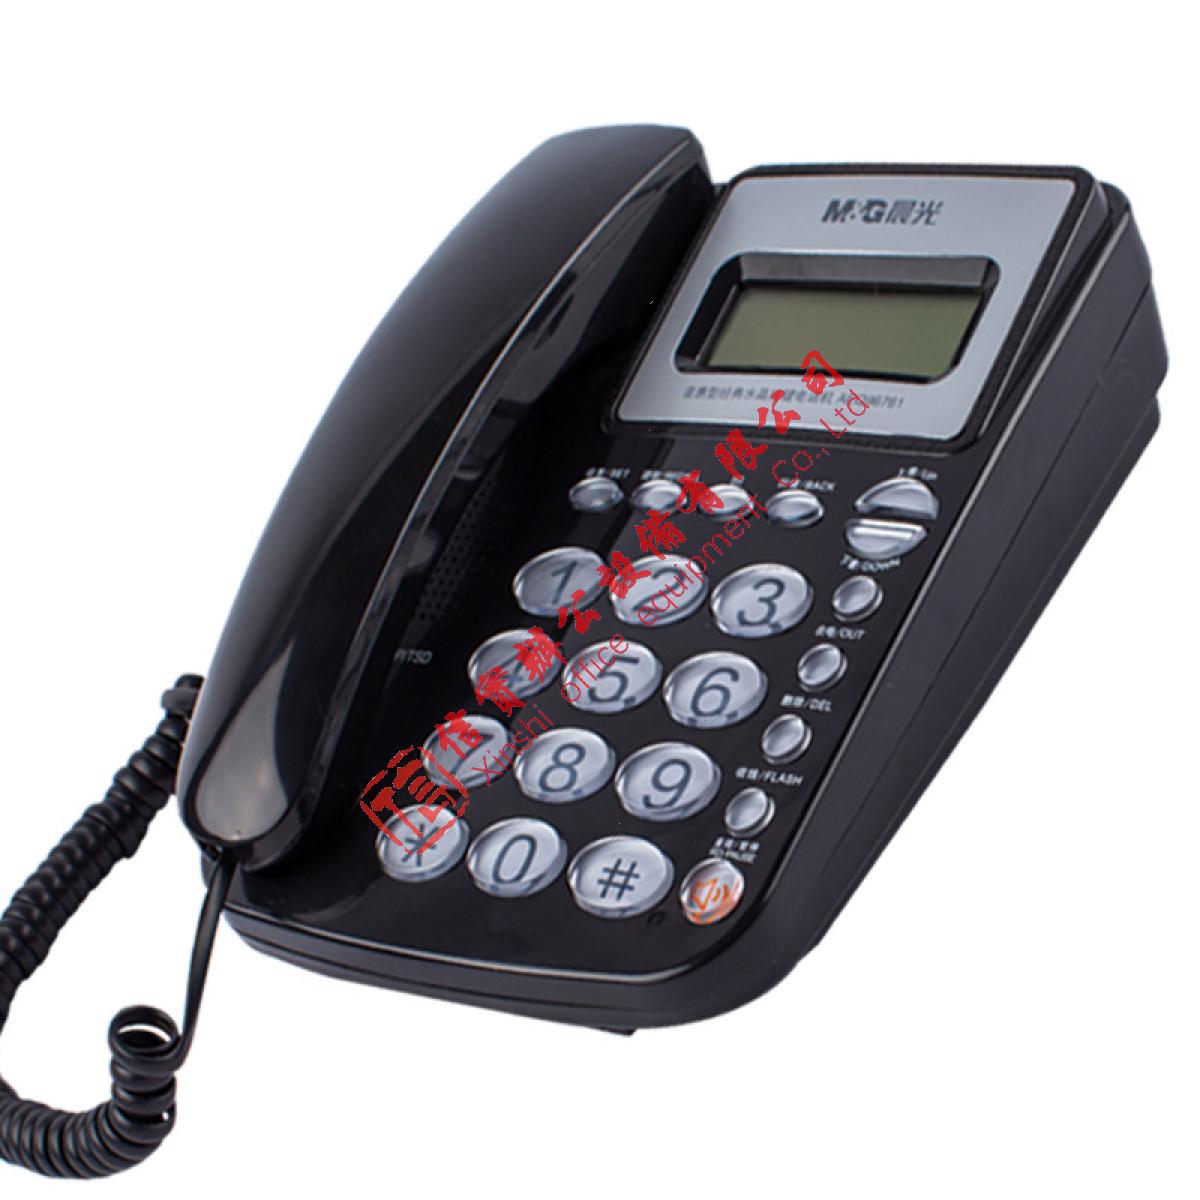 晨光（M&G）AEQ96761普惠型经典水晶按键电话机 有线电话机座机固话办公商务来电显示 黑色